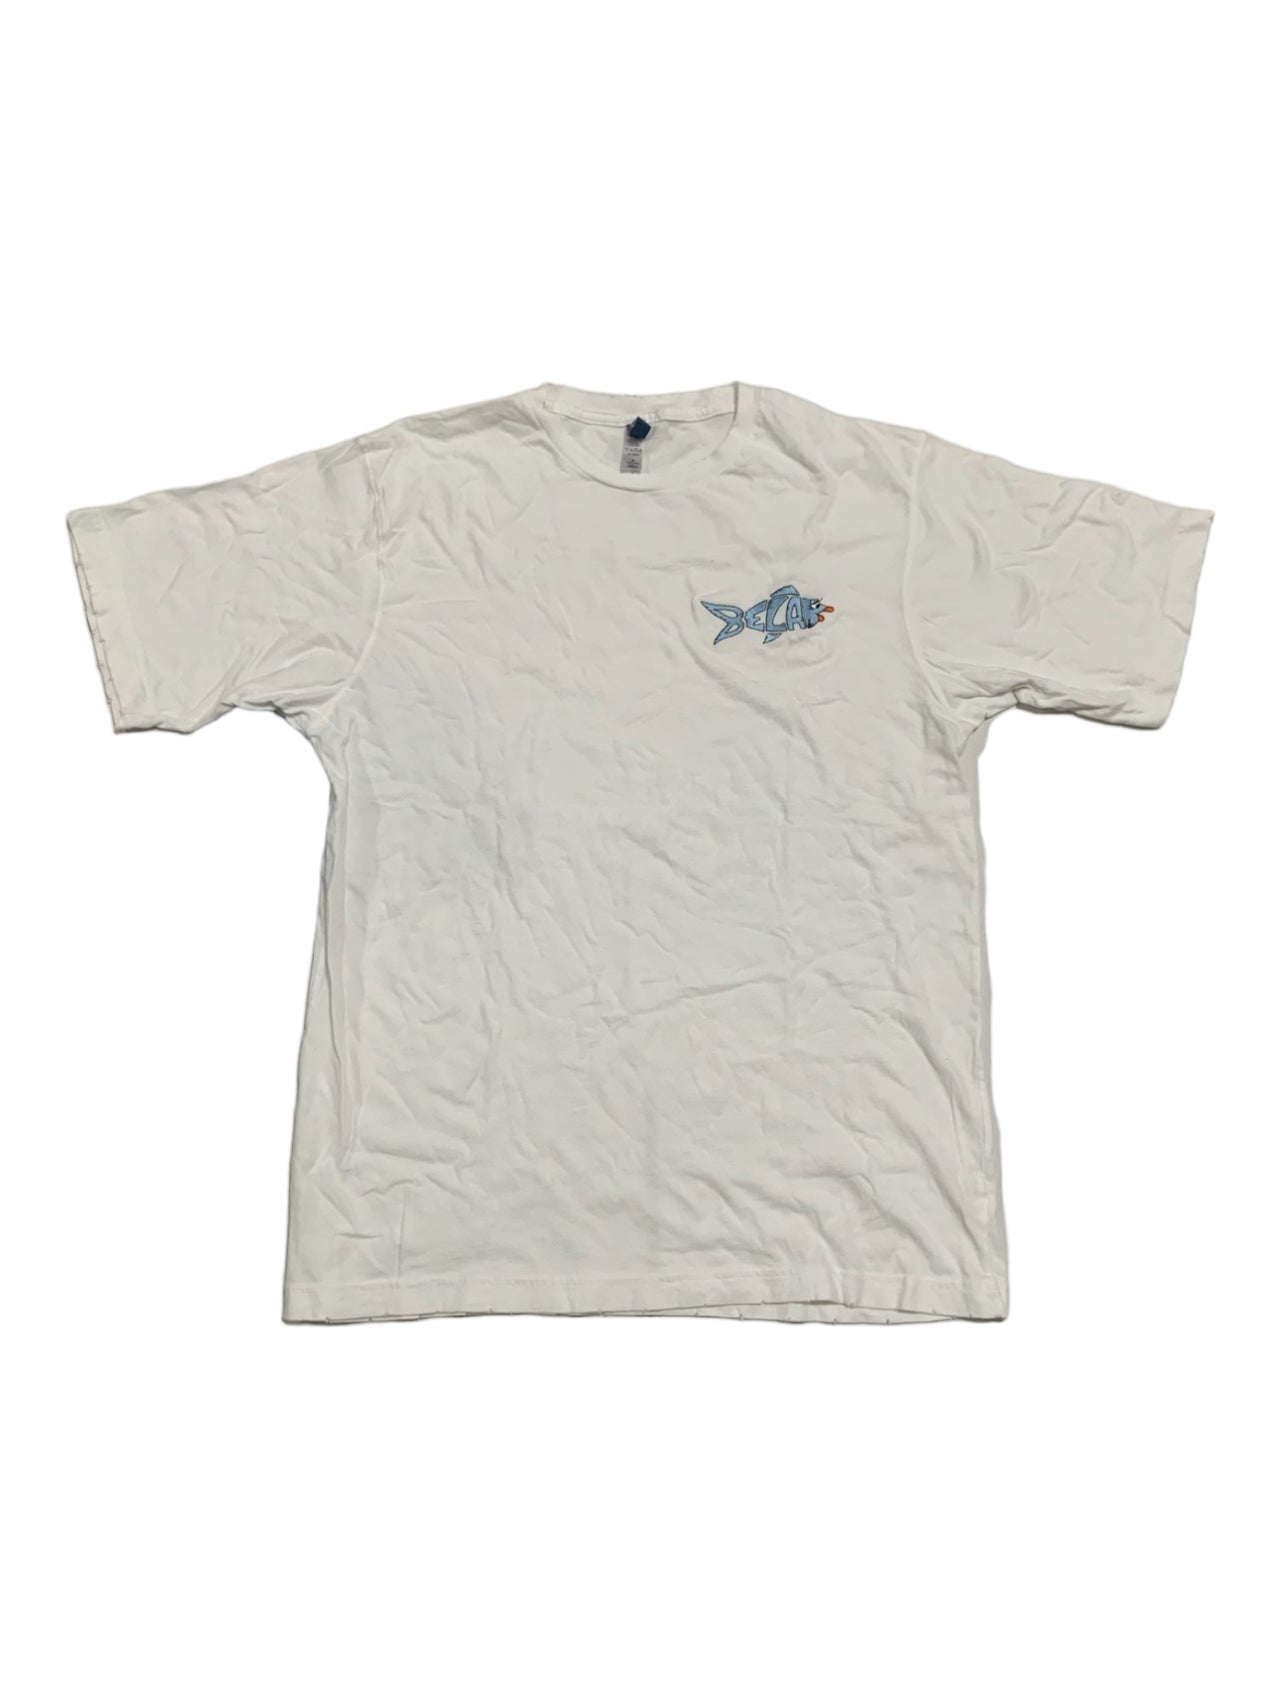 BELA Embroidered Pocket T-Shirt